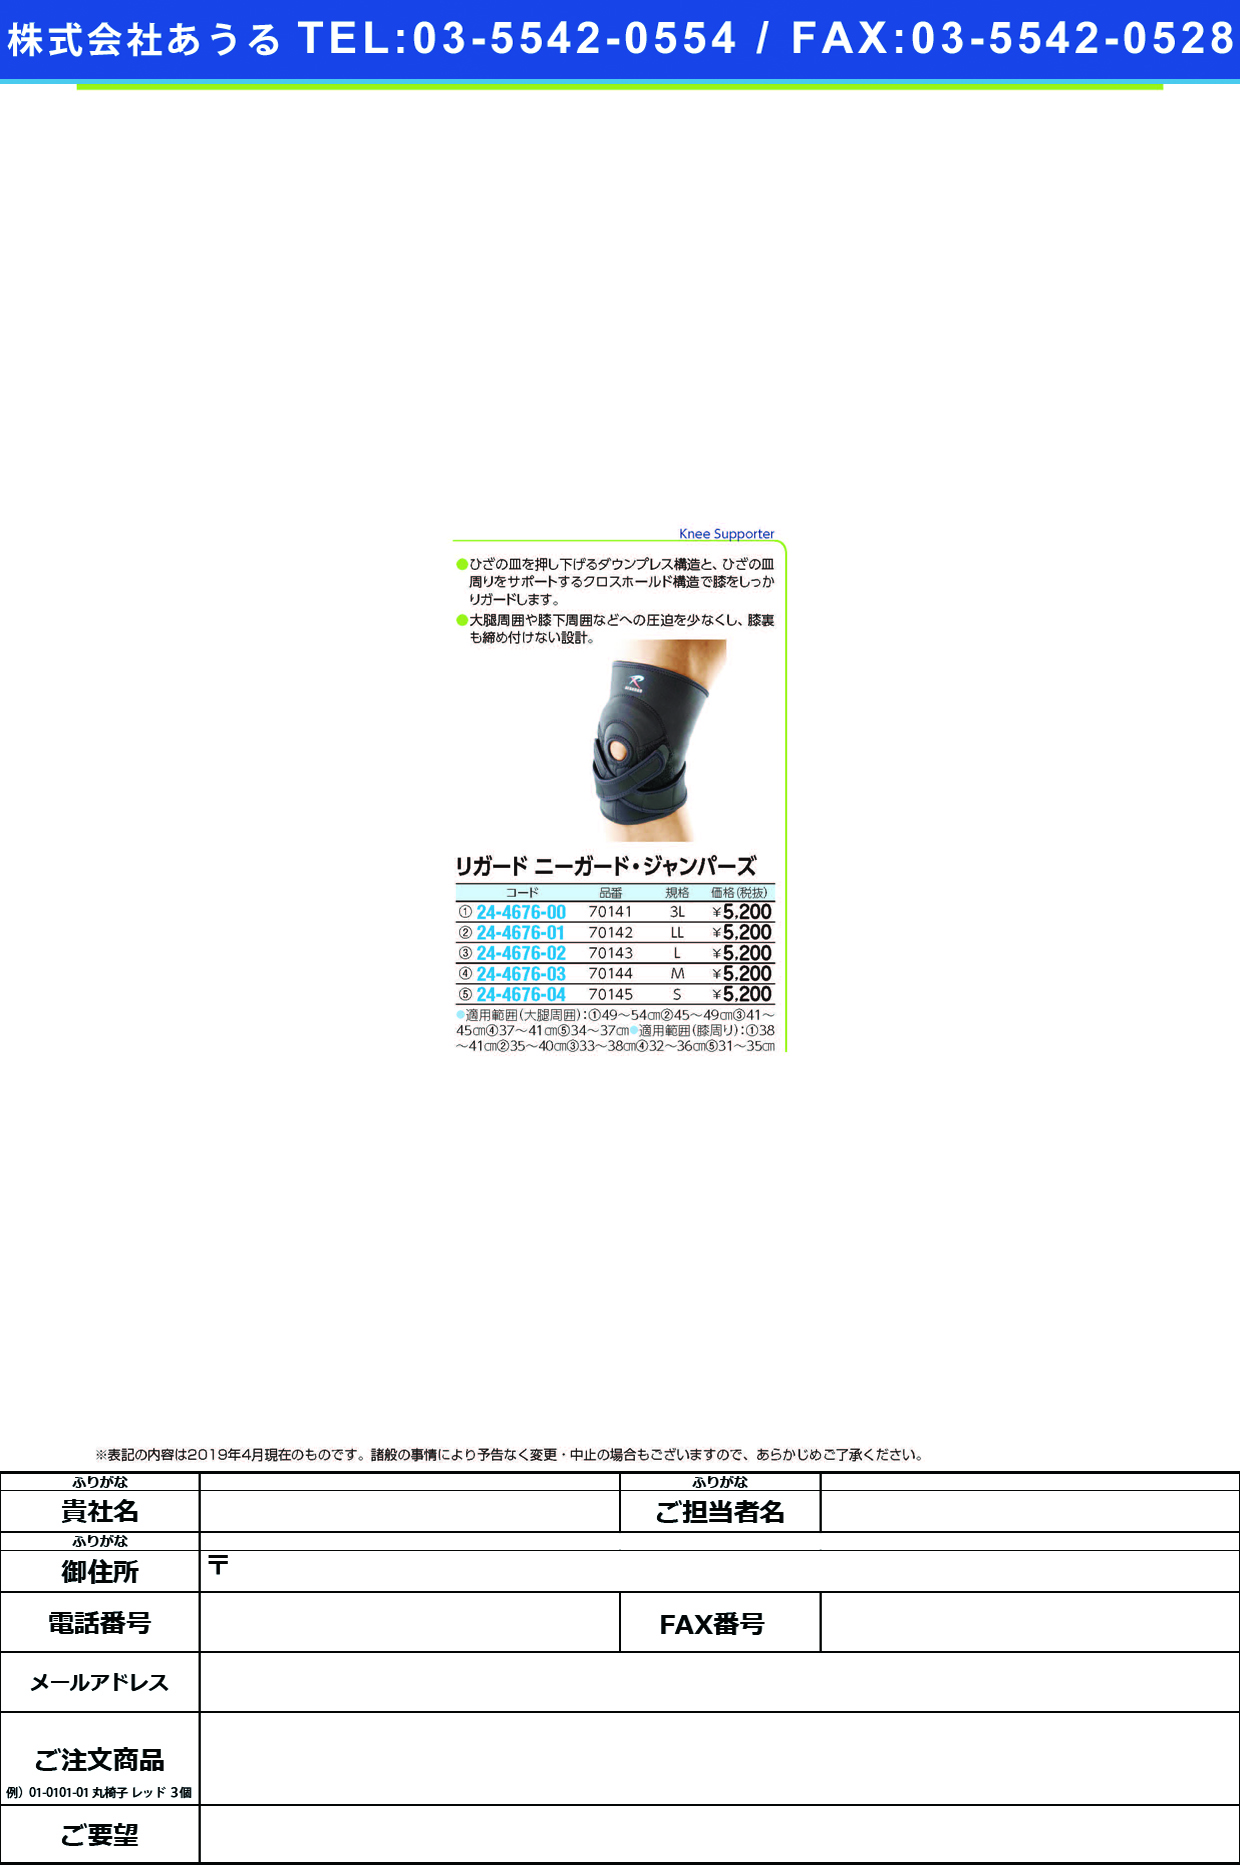 リガードニーガード・ジャンパーズ 70143(L) ﾘｶﾞｰﾄﾞﾆｰｶﾞｰﾄﾞｼﾞｬﾝﾊﾟｰ(アルケア)